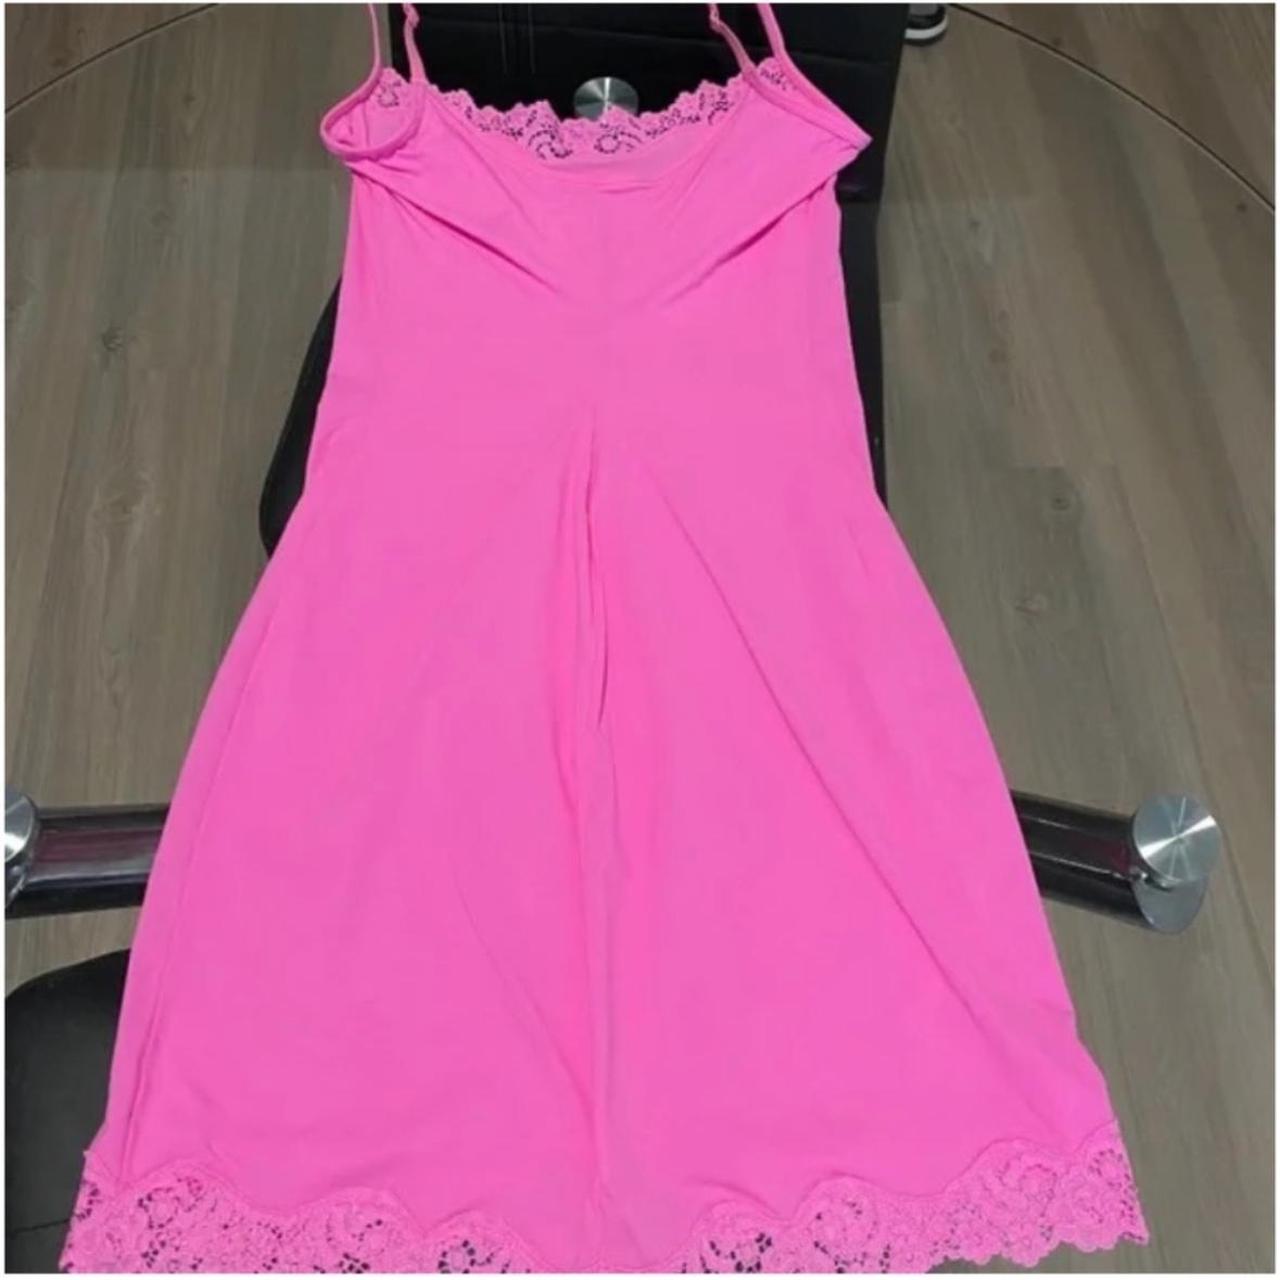 skims pink lace mini dress never worn - Depop